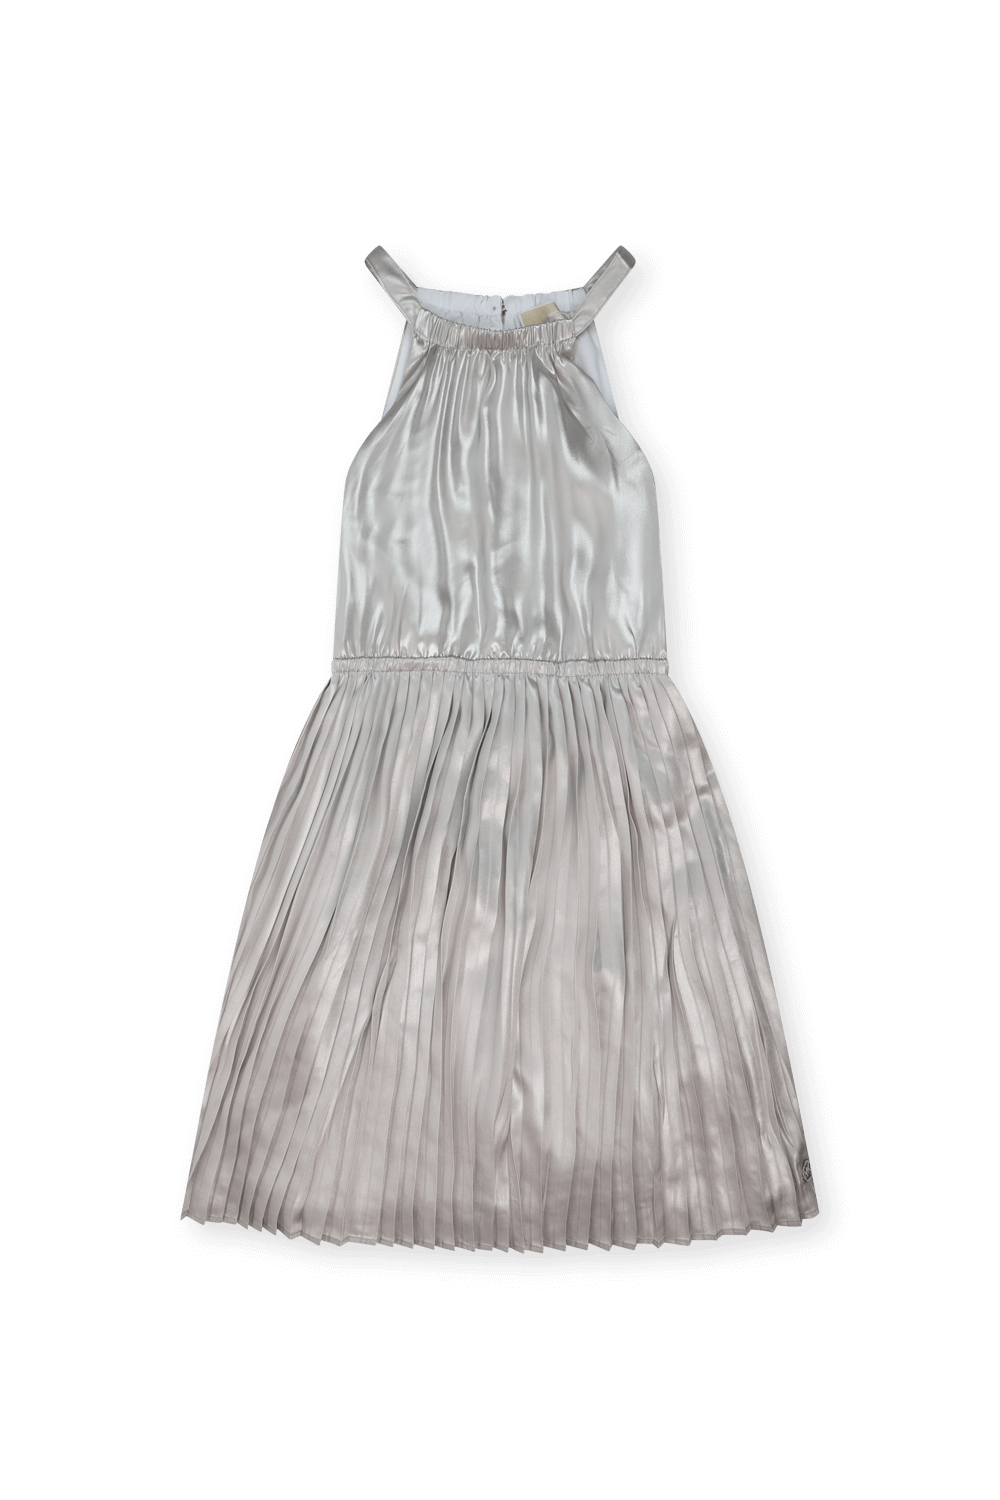 שמלת פליסה מטאלית - גיל 14 MICHAEL KORS KIDS